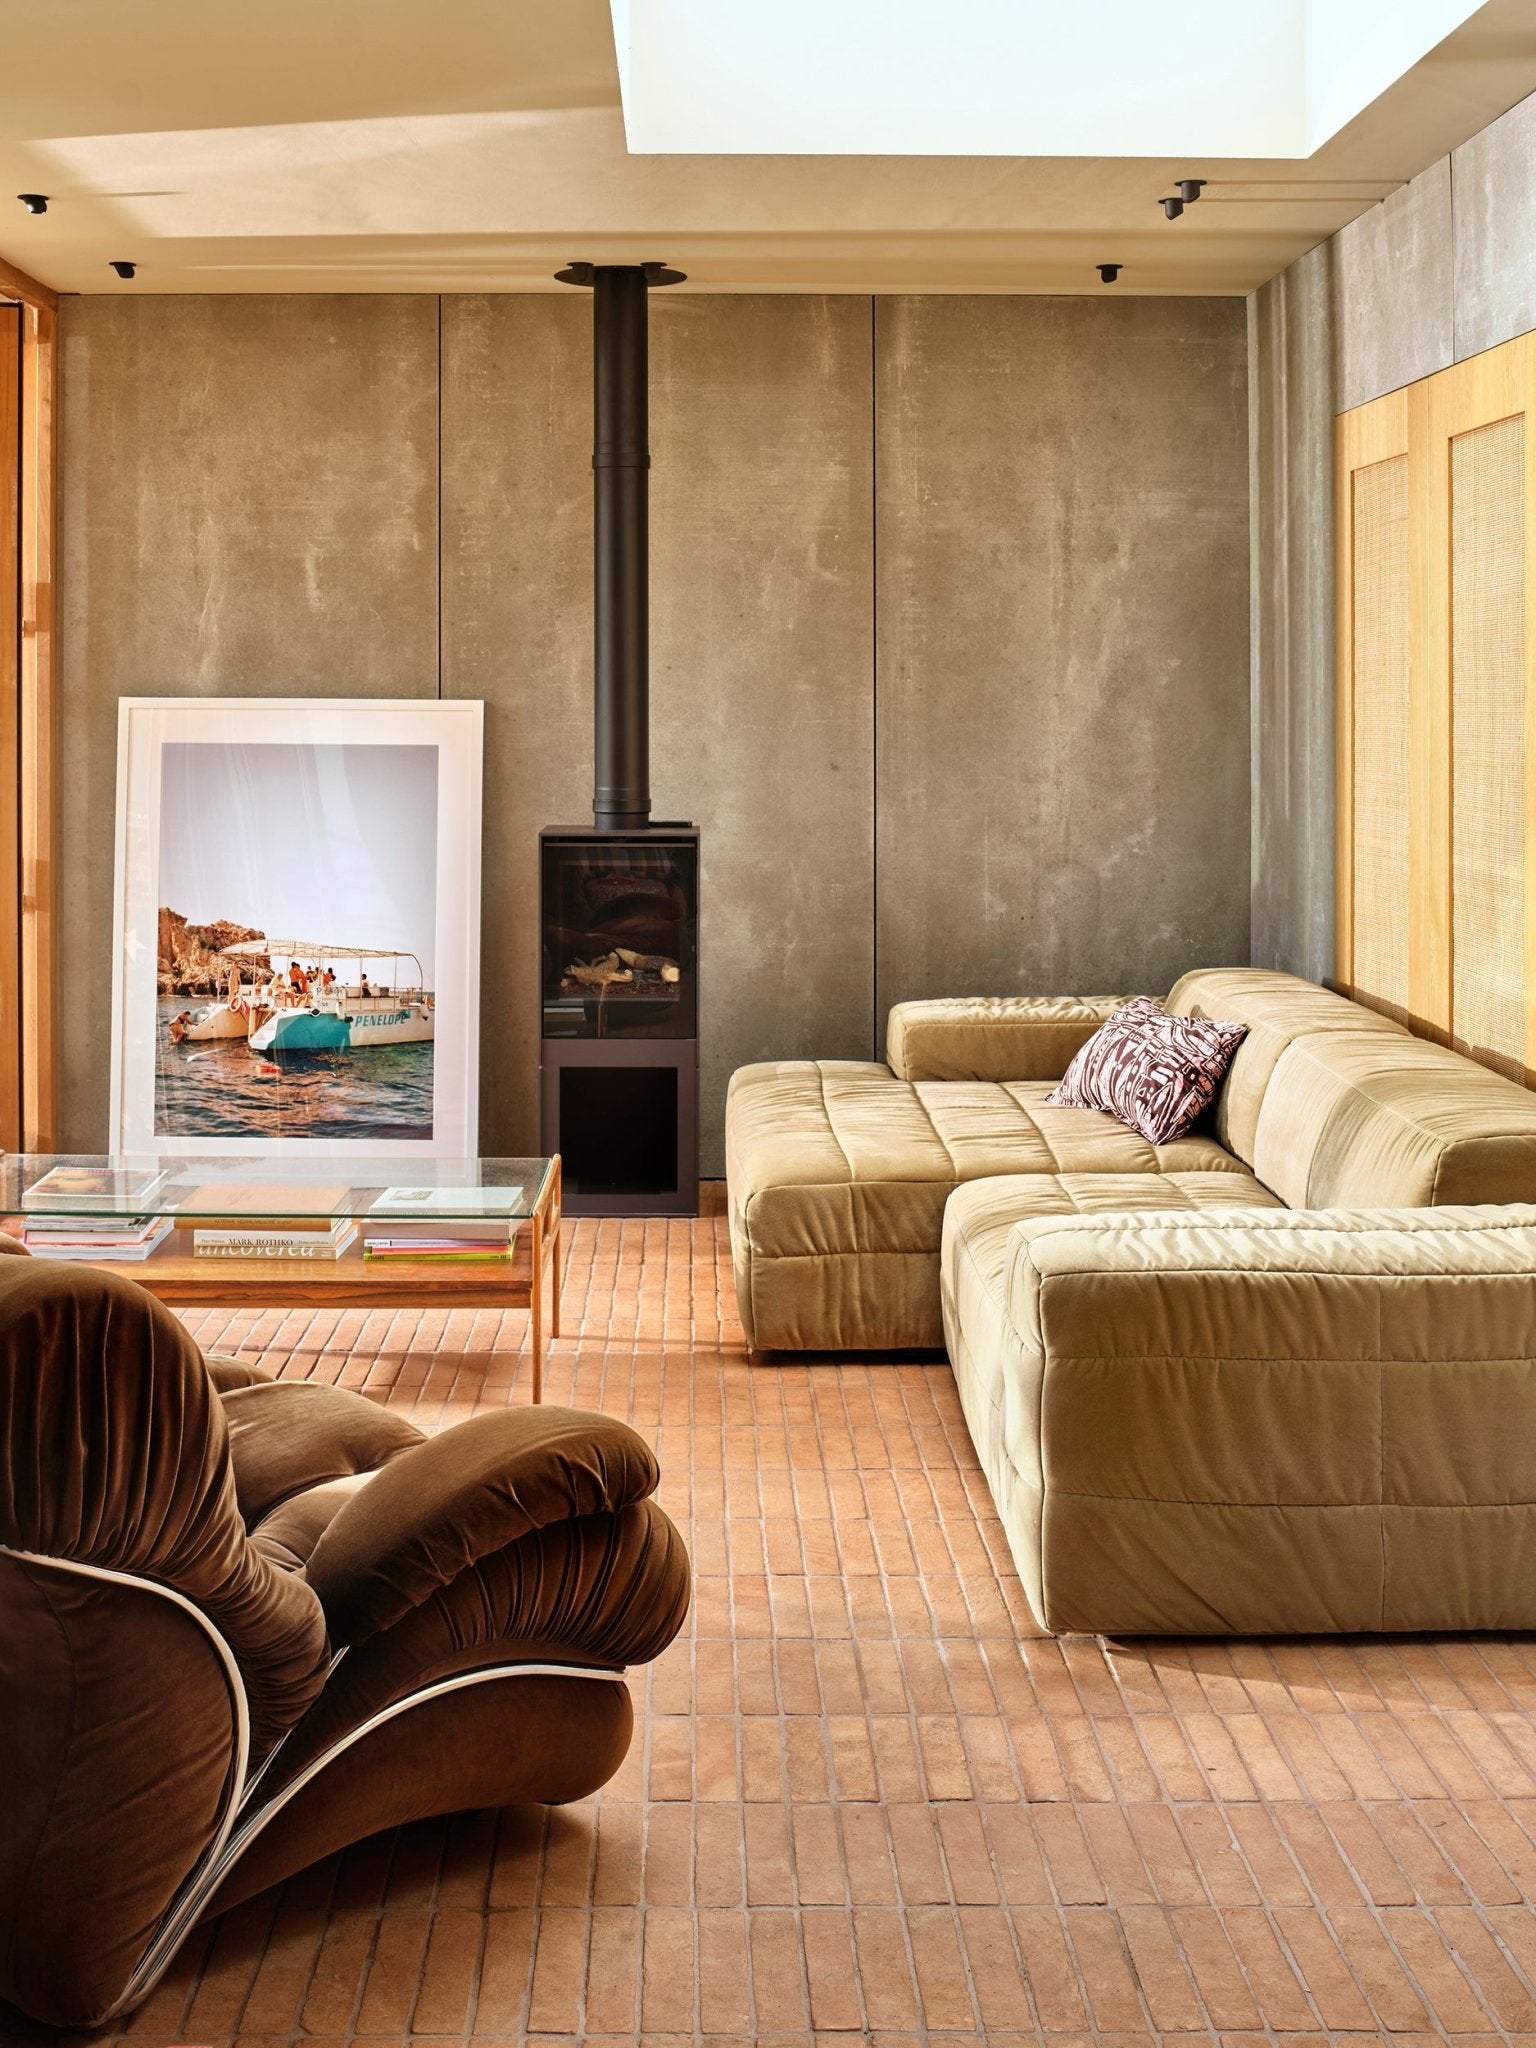 Brut sofa - Element left divan, royal velvet, cream - Urban Nest